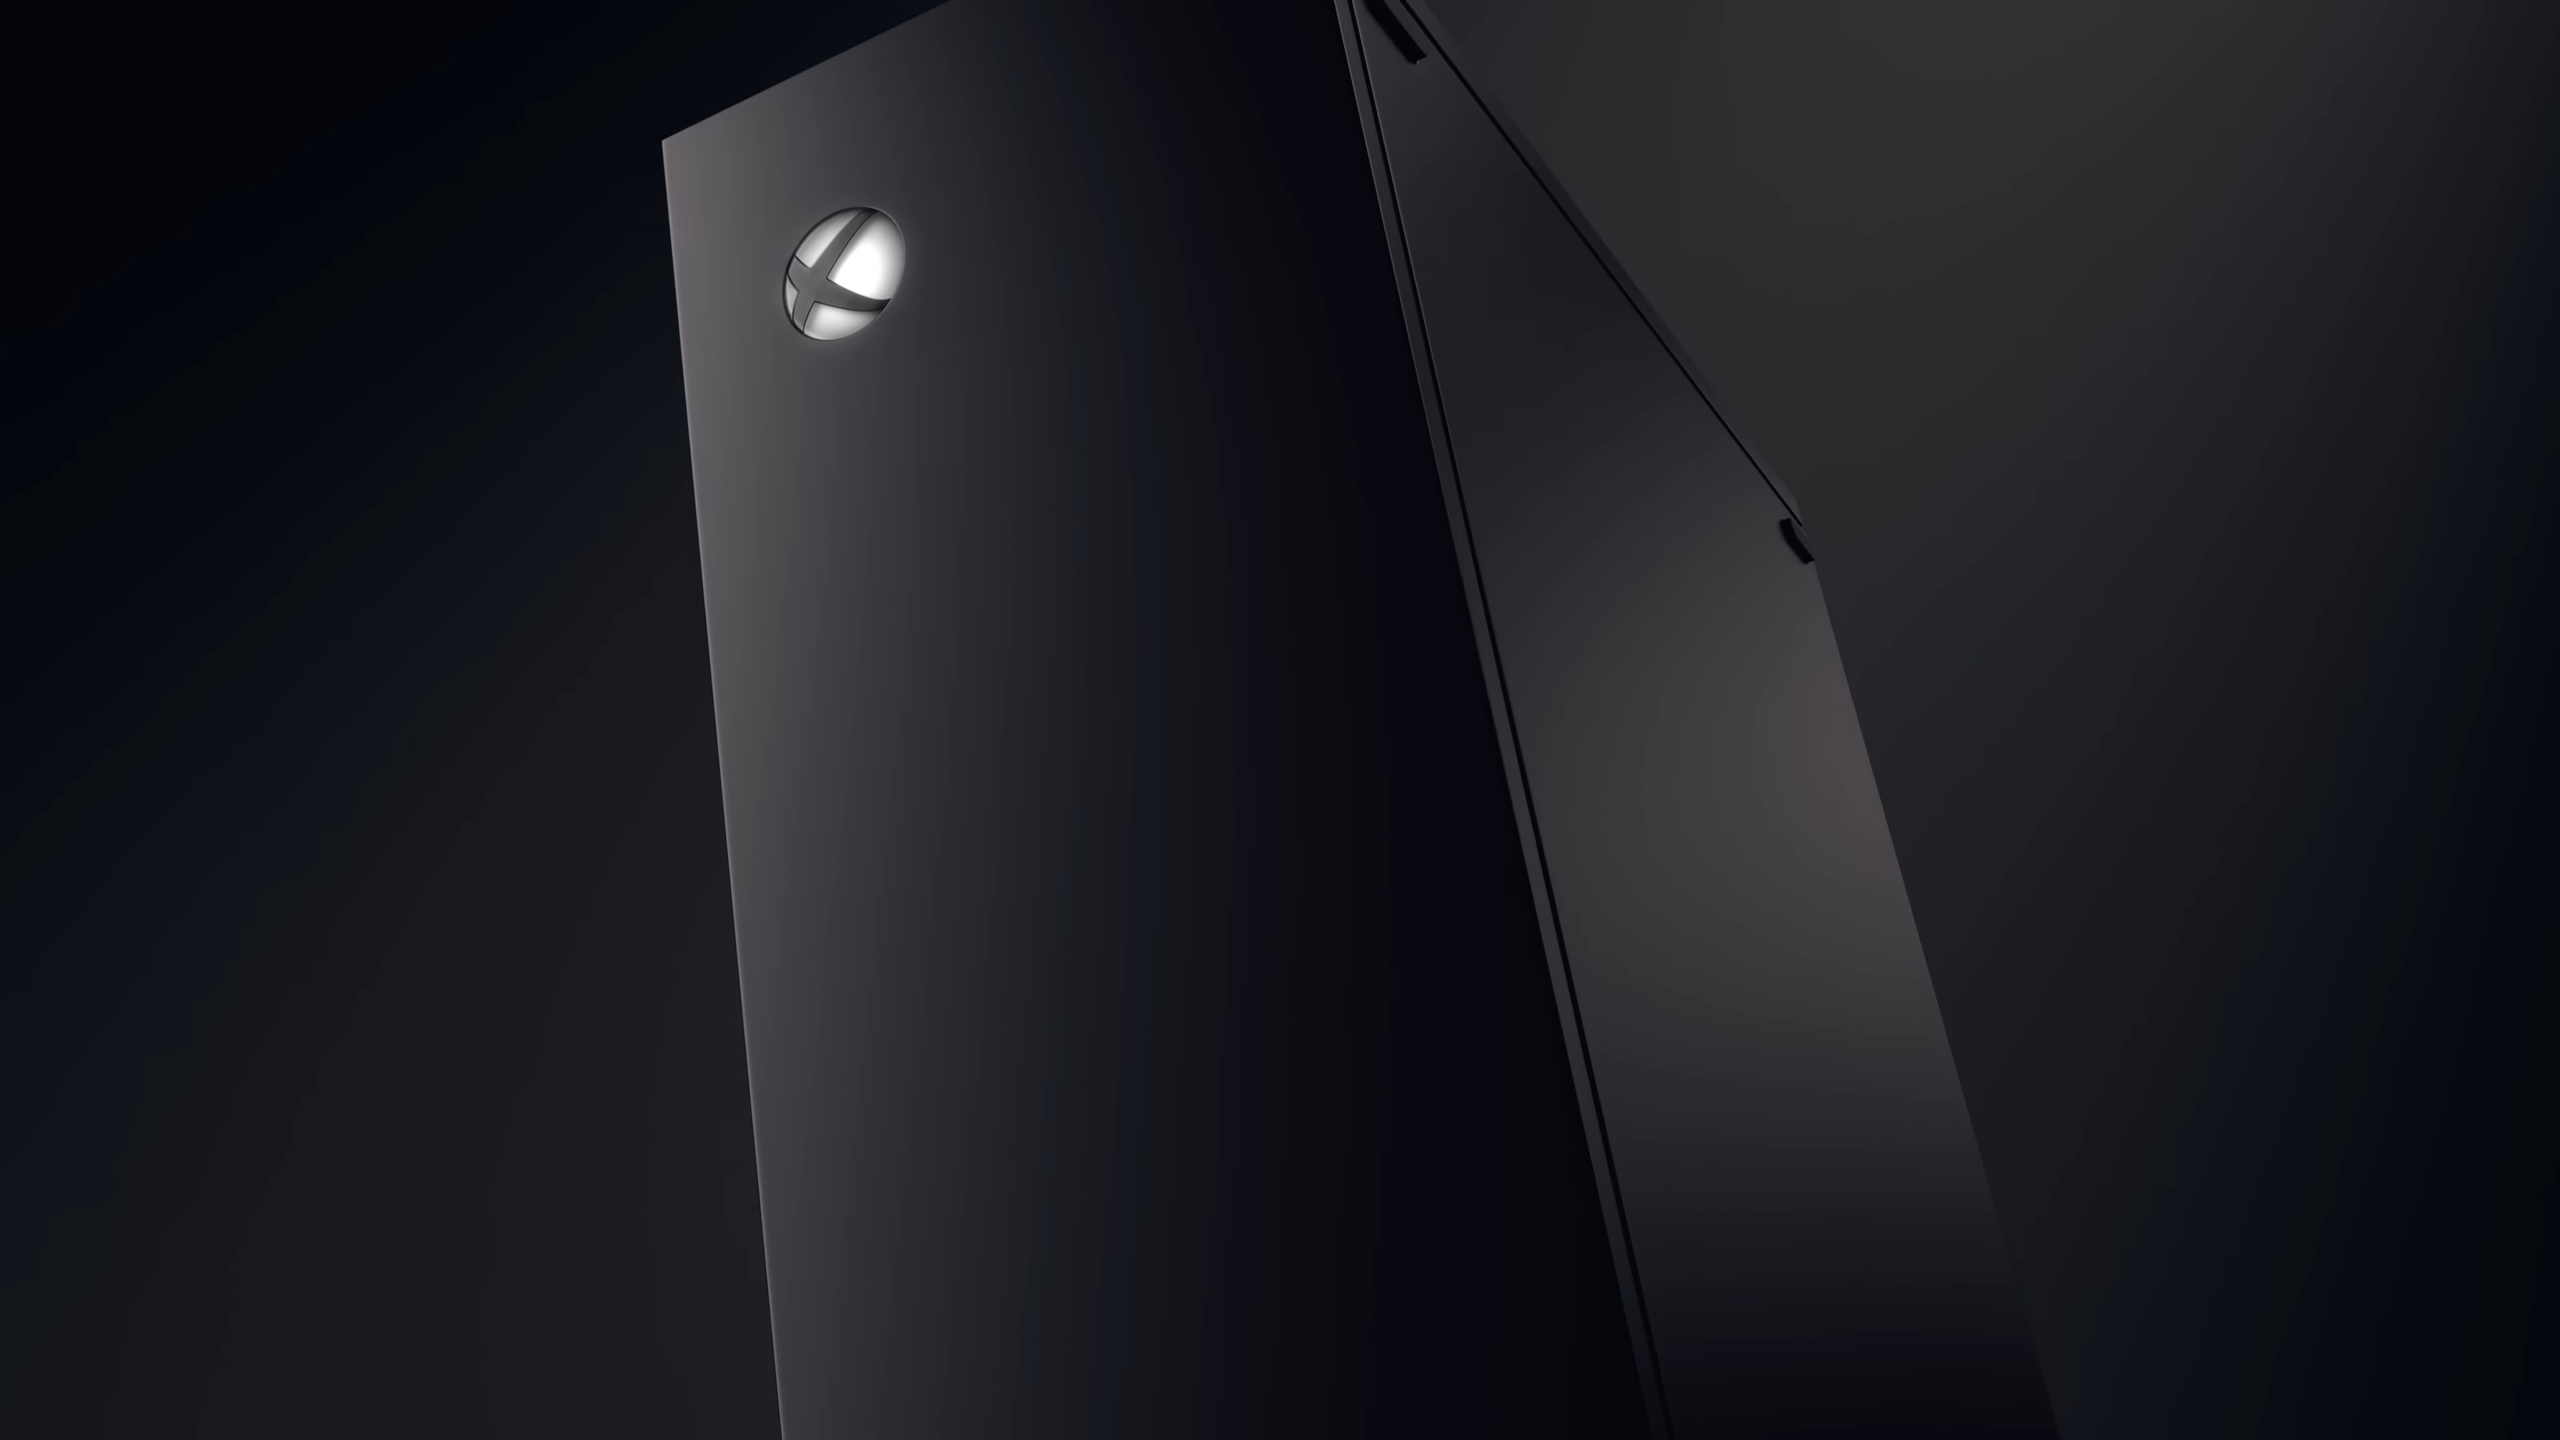 Xbox Series S lanza una versión alternativa en negro y con mucho más  almacenamiento